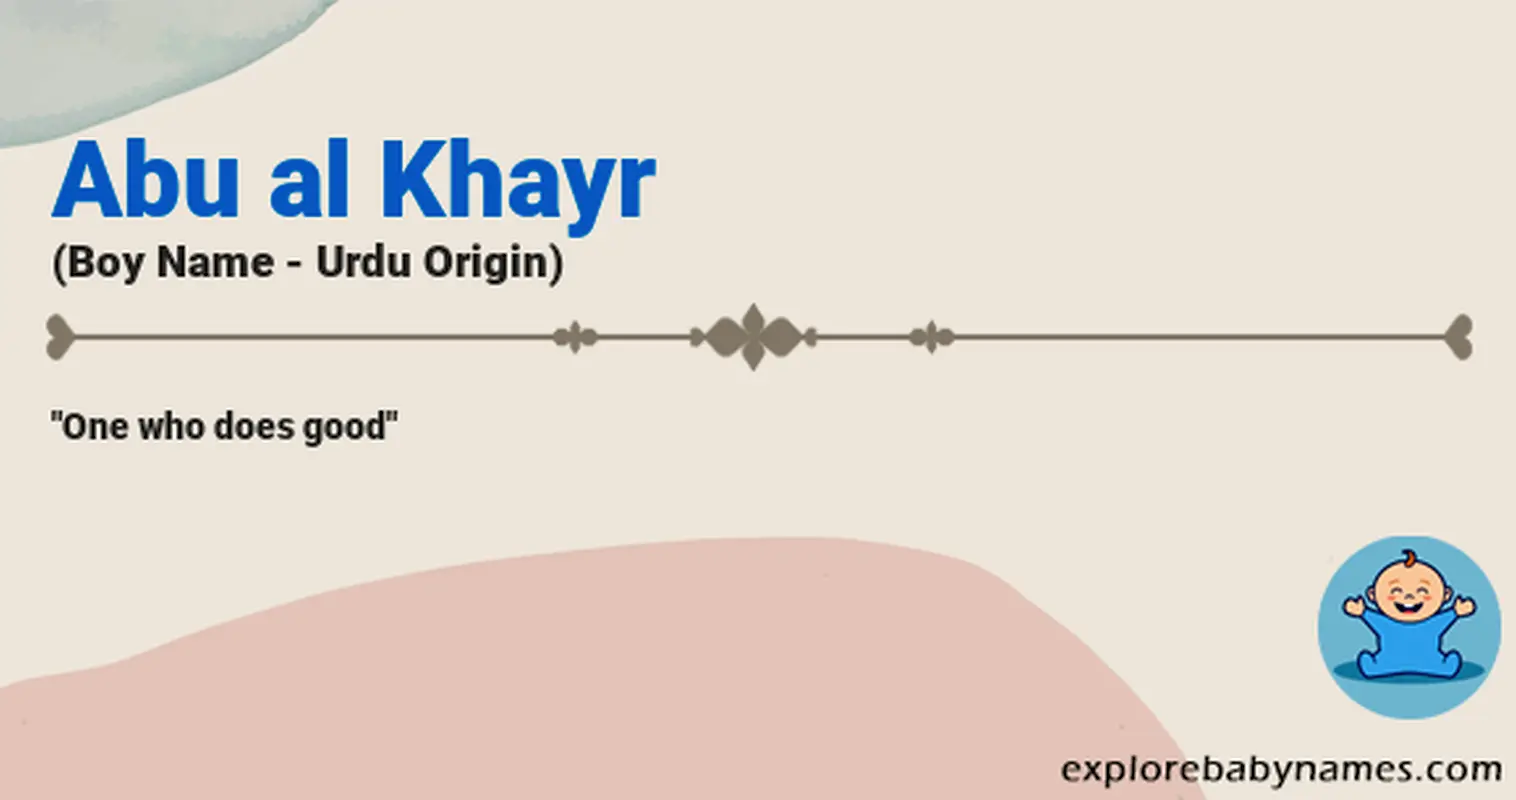 Meaning of Abu al Khayr